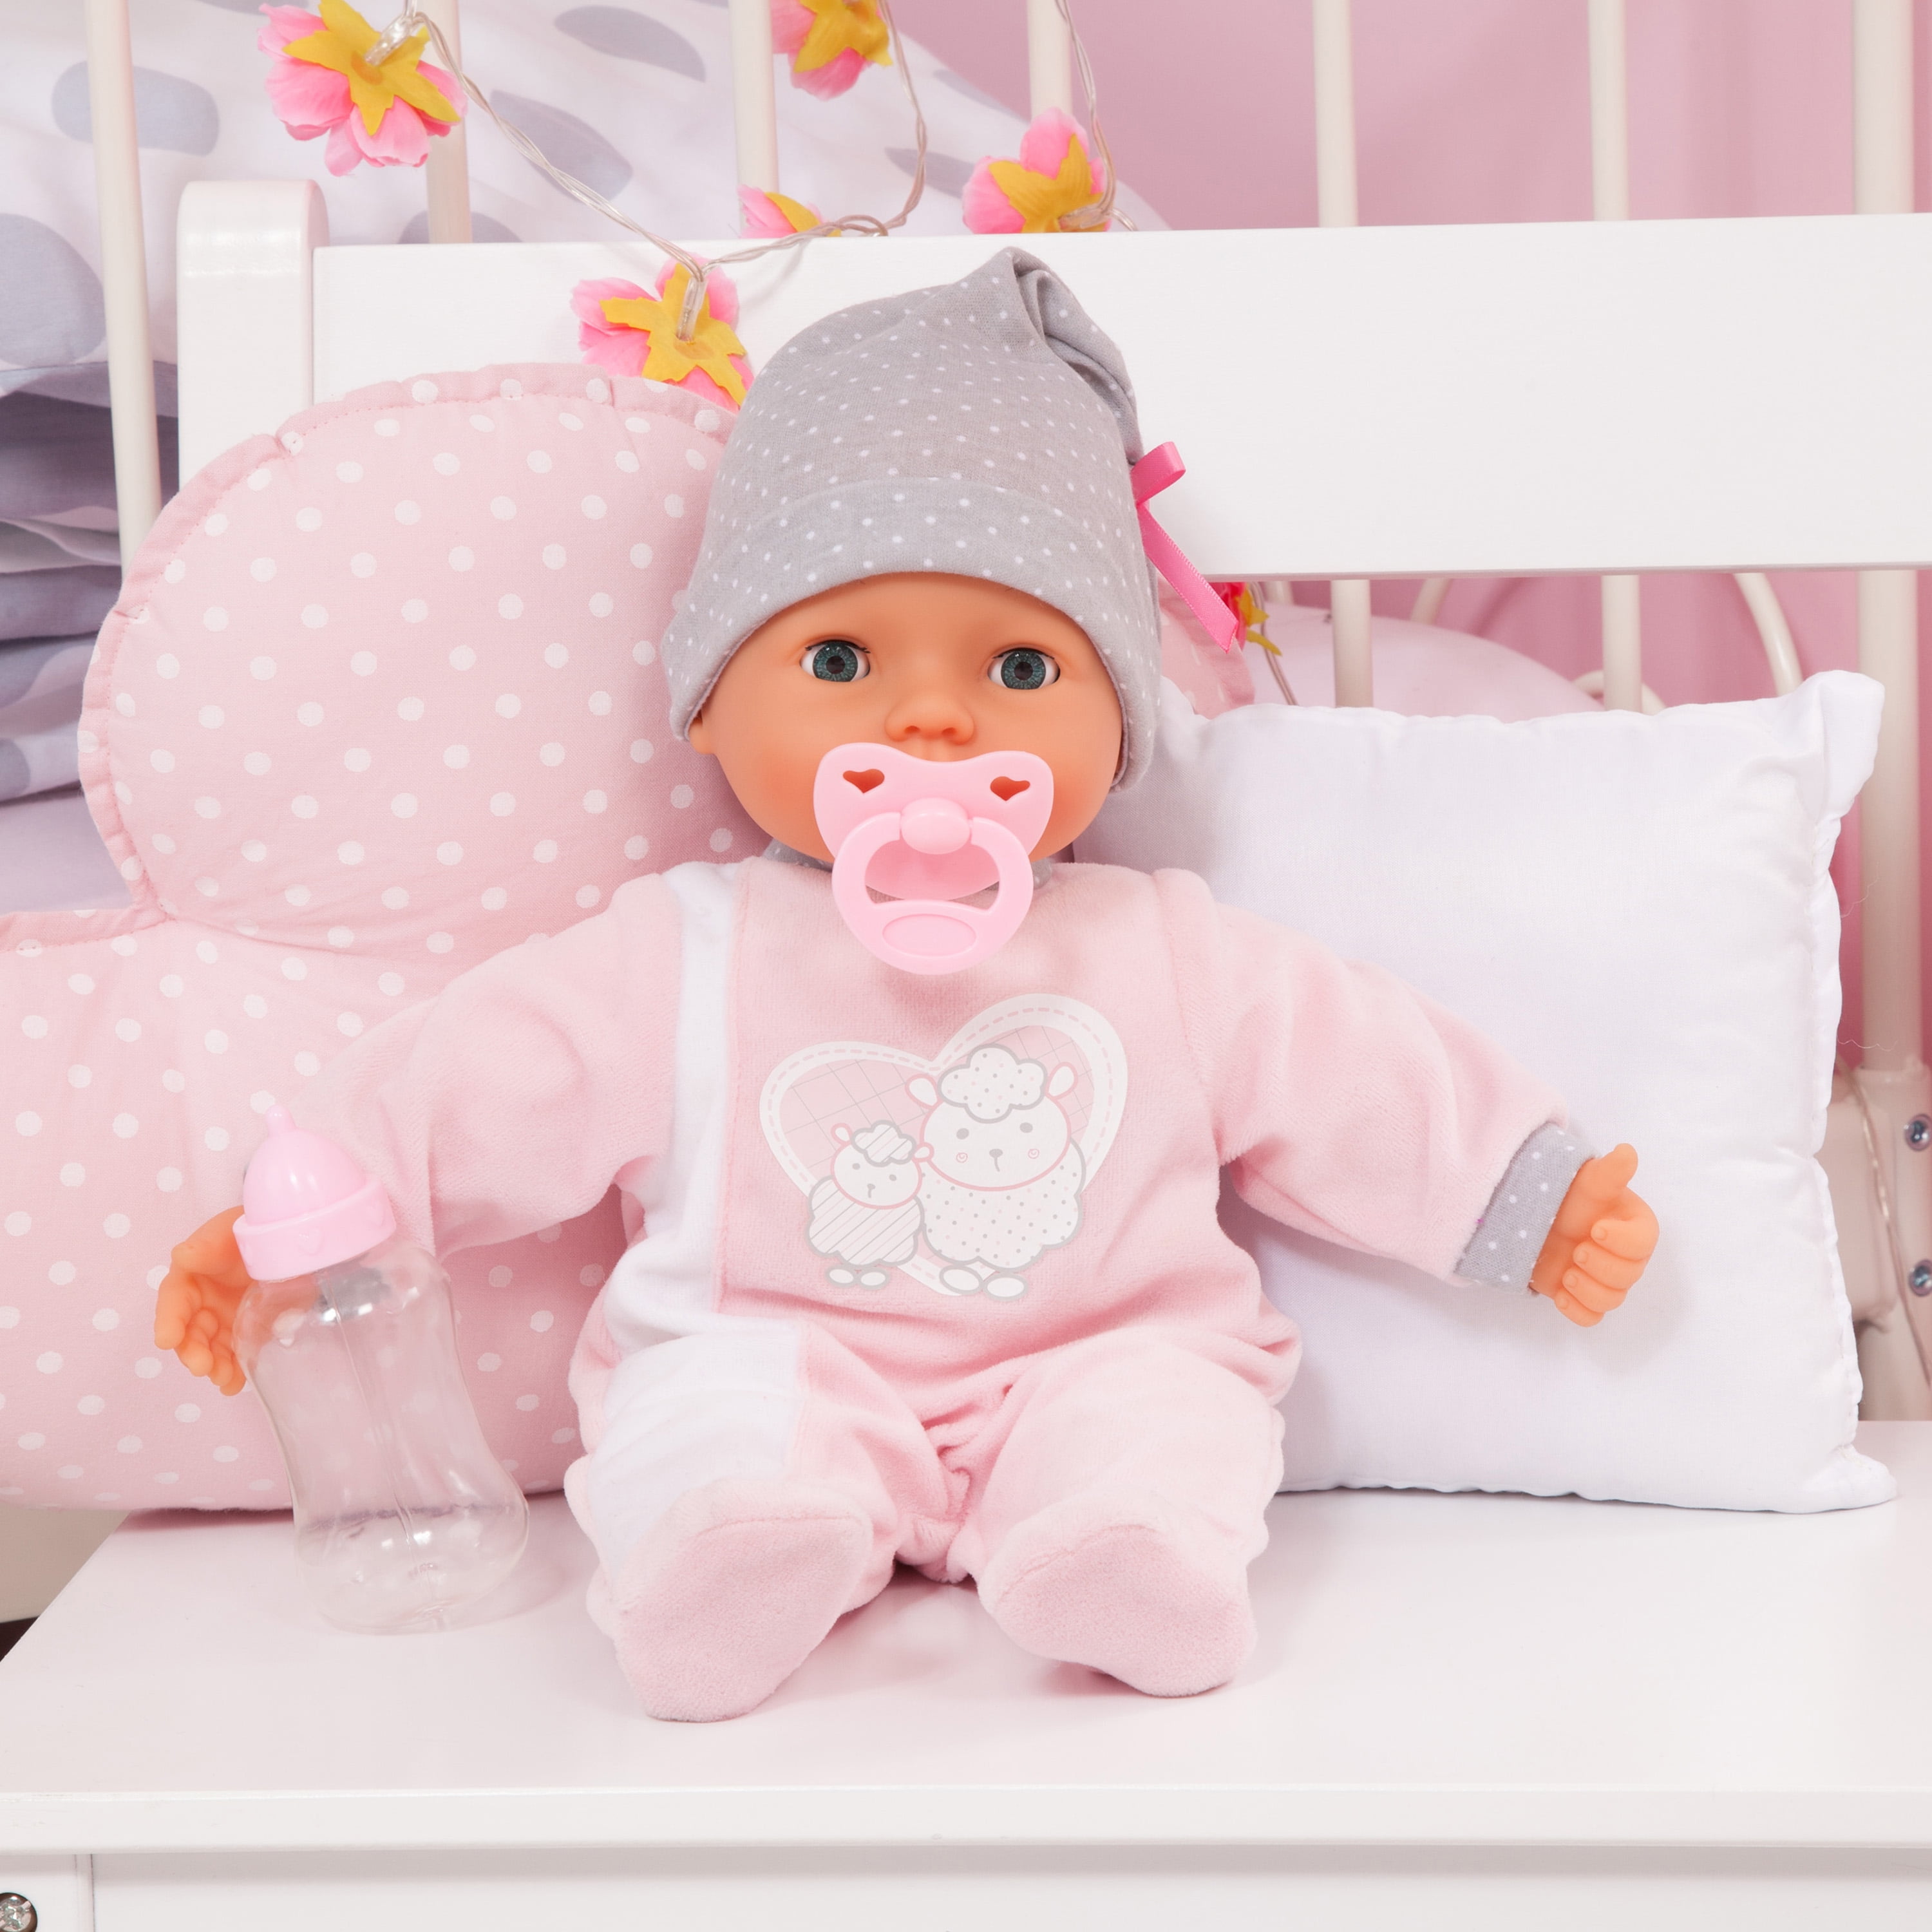 Toalla personalizada  Baby doll nursery, Baby dolls, Applique